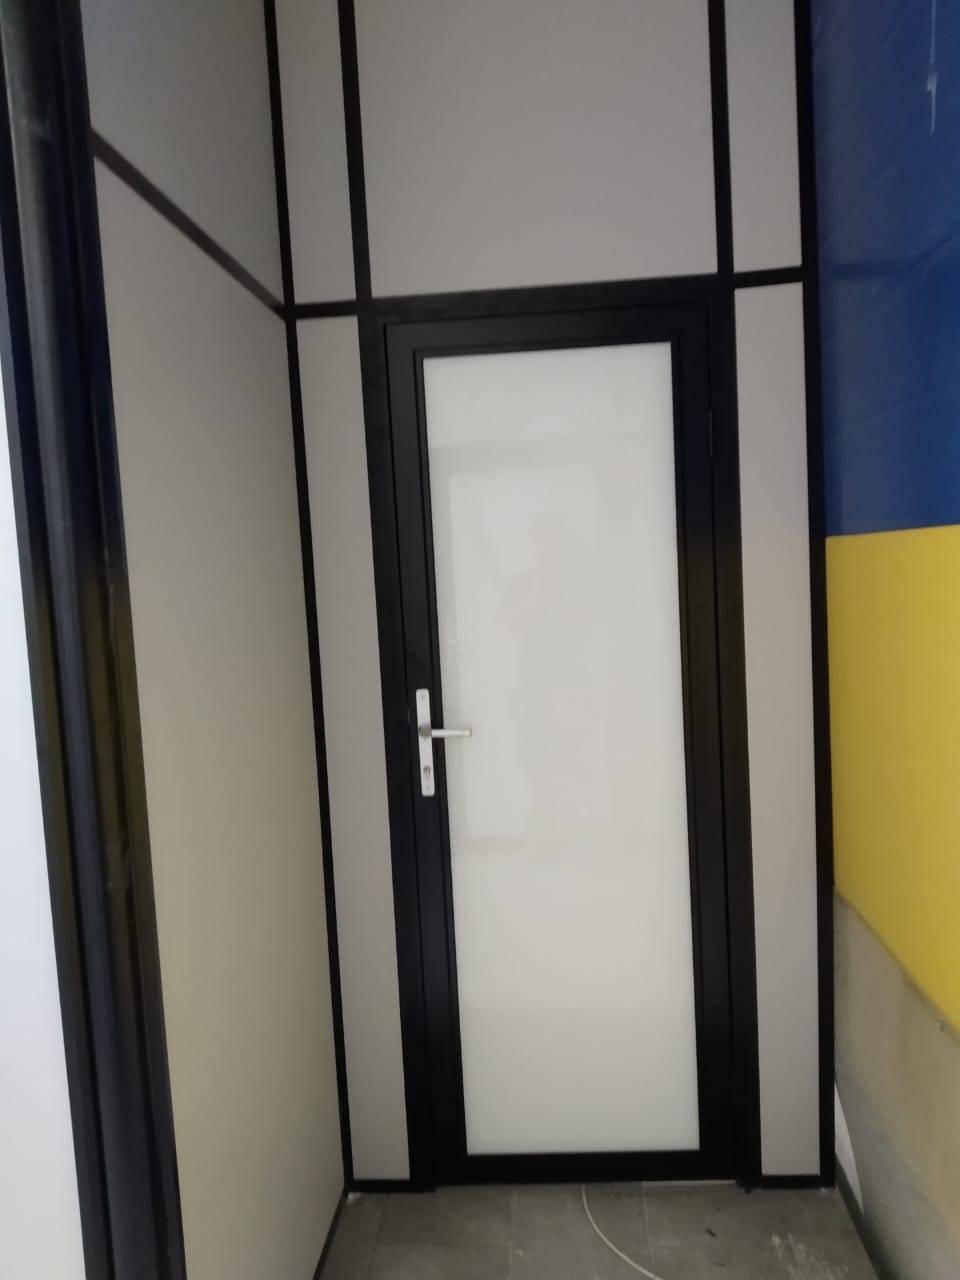 Матовая каркасная дверь в офисе из глухих перегородок